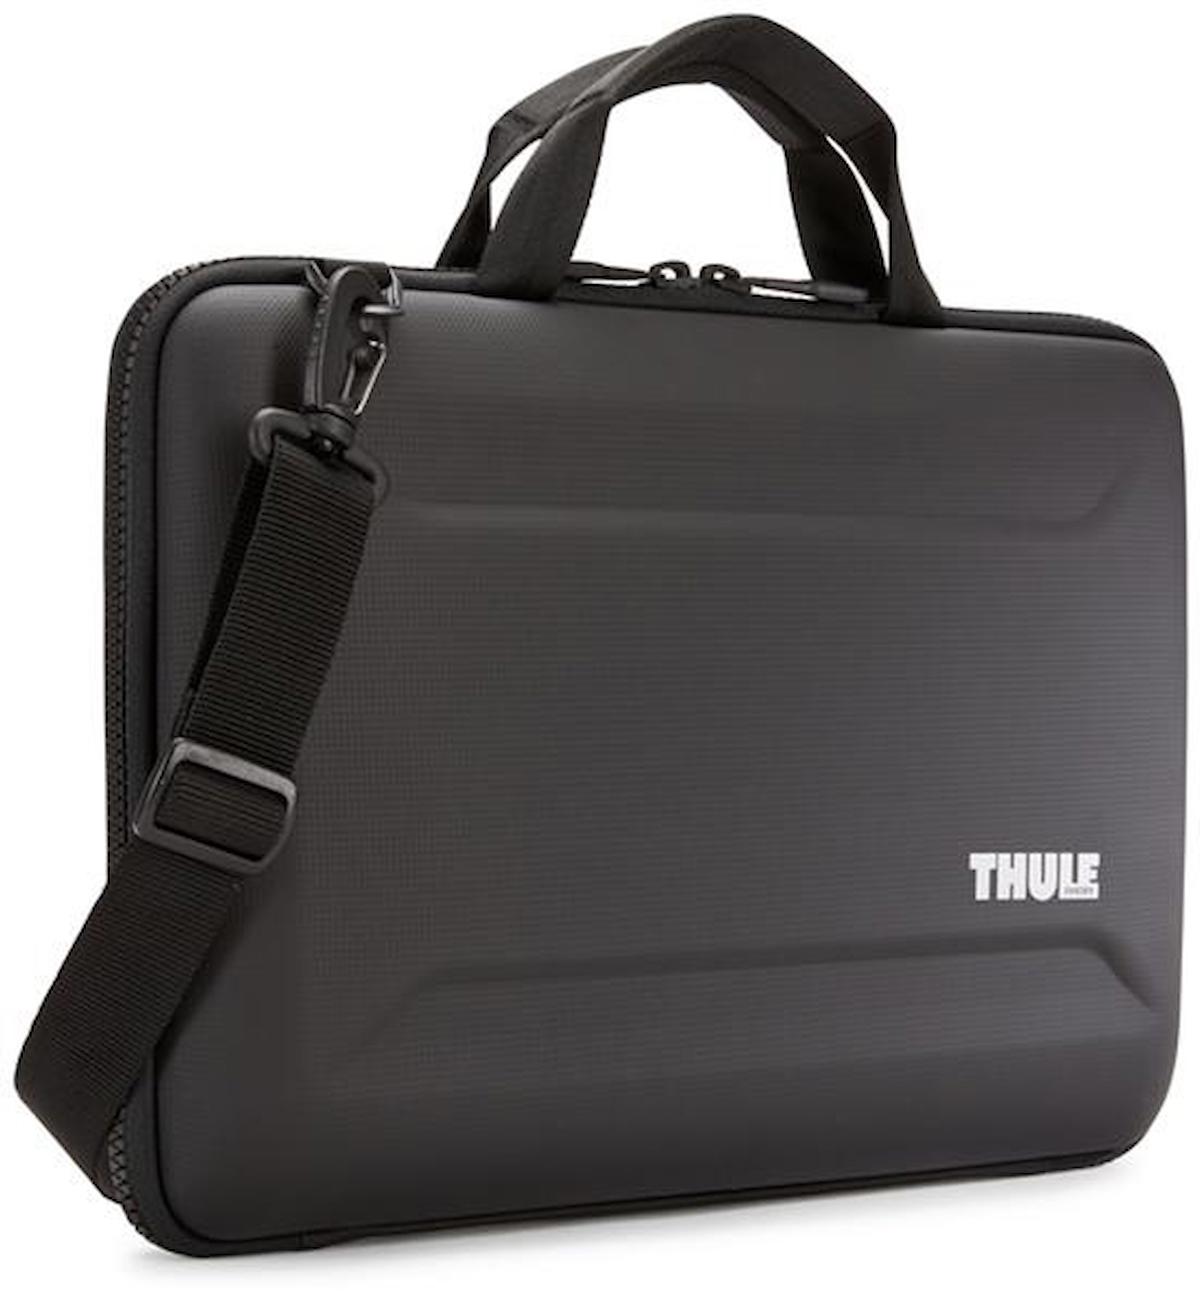 Thule 15 inç Tekstil Su Geçirmez Laptop Postacı Çantası Siyah